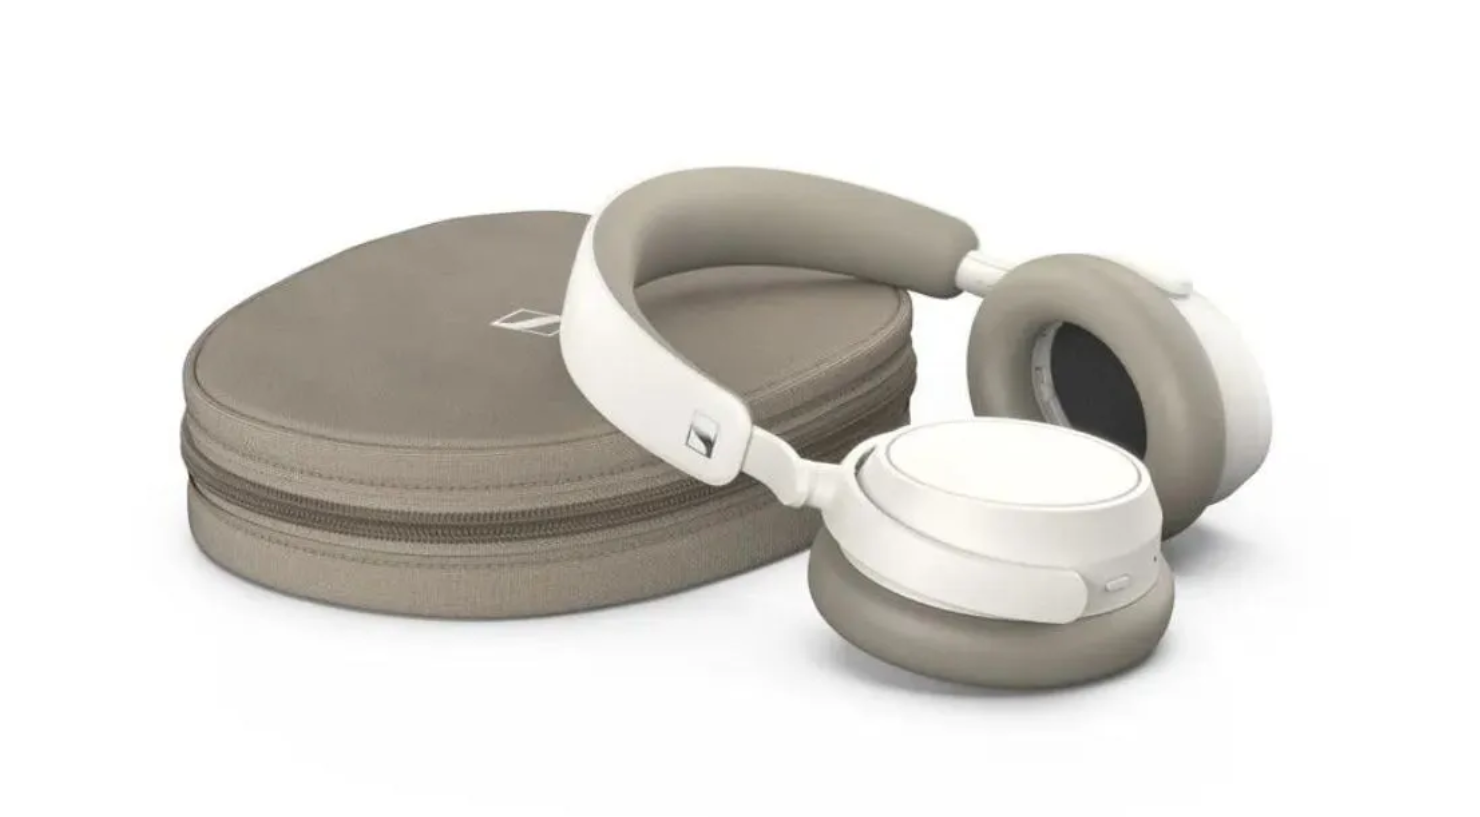 Accentum Plus Headphones: Over-Ear Comfort